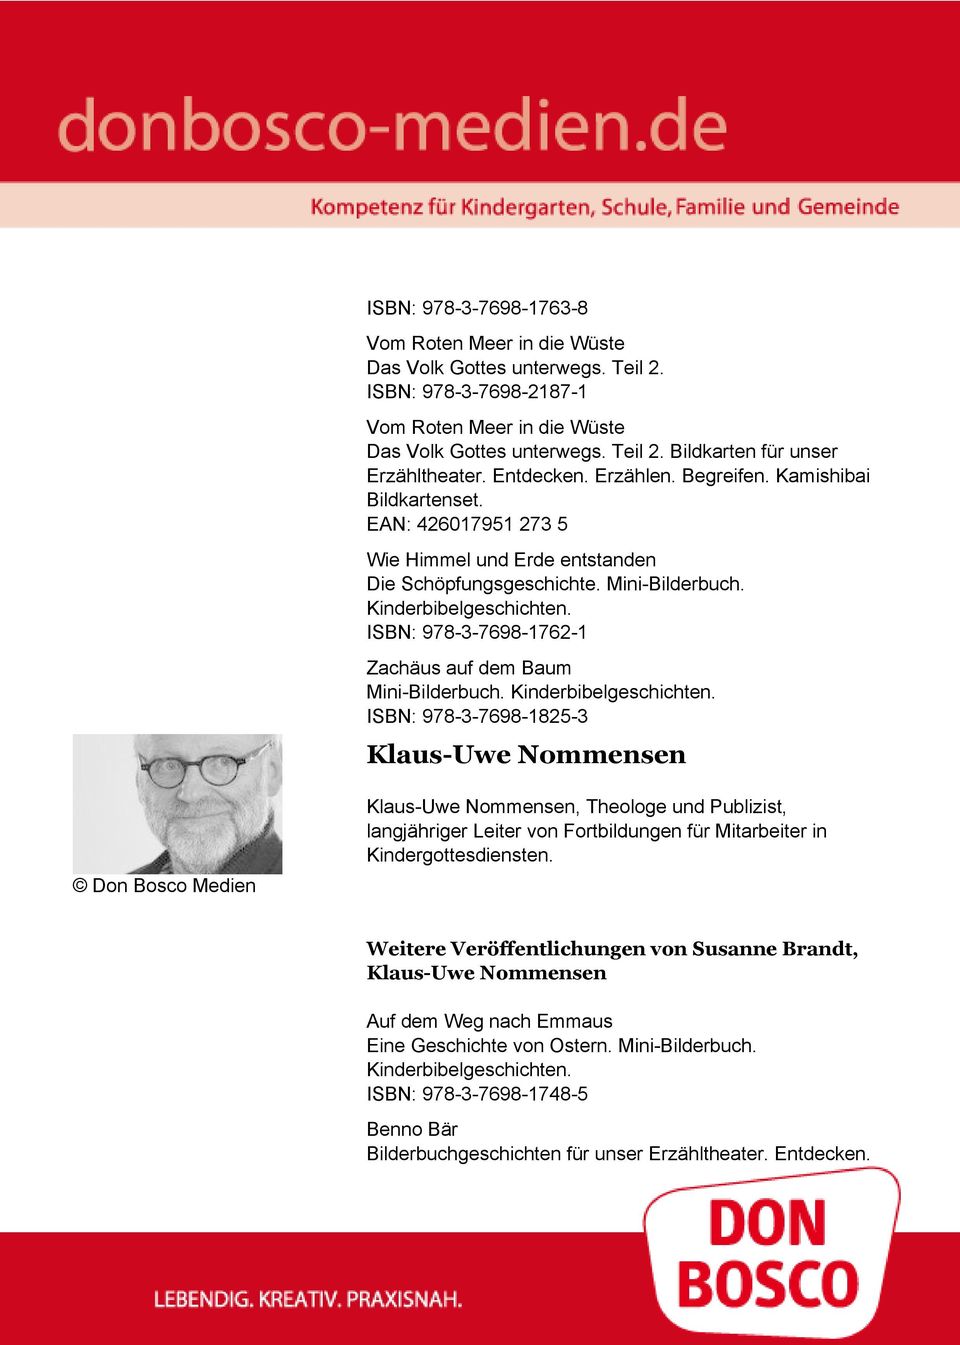 ISBN: 978-3-7698-1762-1 Zachäus auf dem Baum ISBN: 978-3-7698-1825-3 Klaus-Uwe Nommensen Don Bosco Medien Klaus-Uwe Nommensen, Theologe und Publizist, langjähriger Leiter von Fortbildungen für